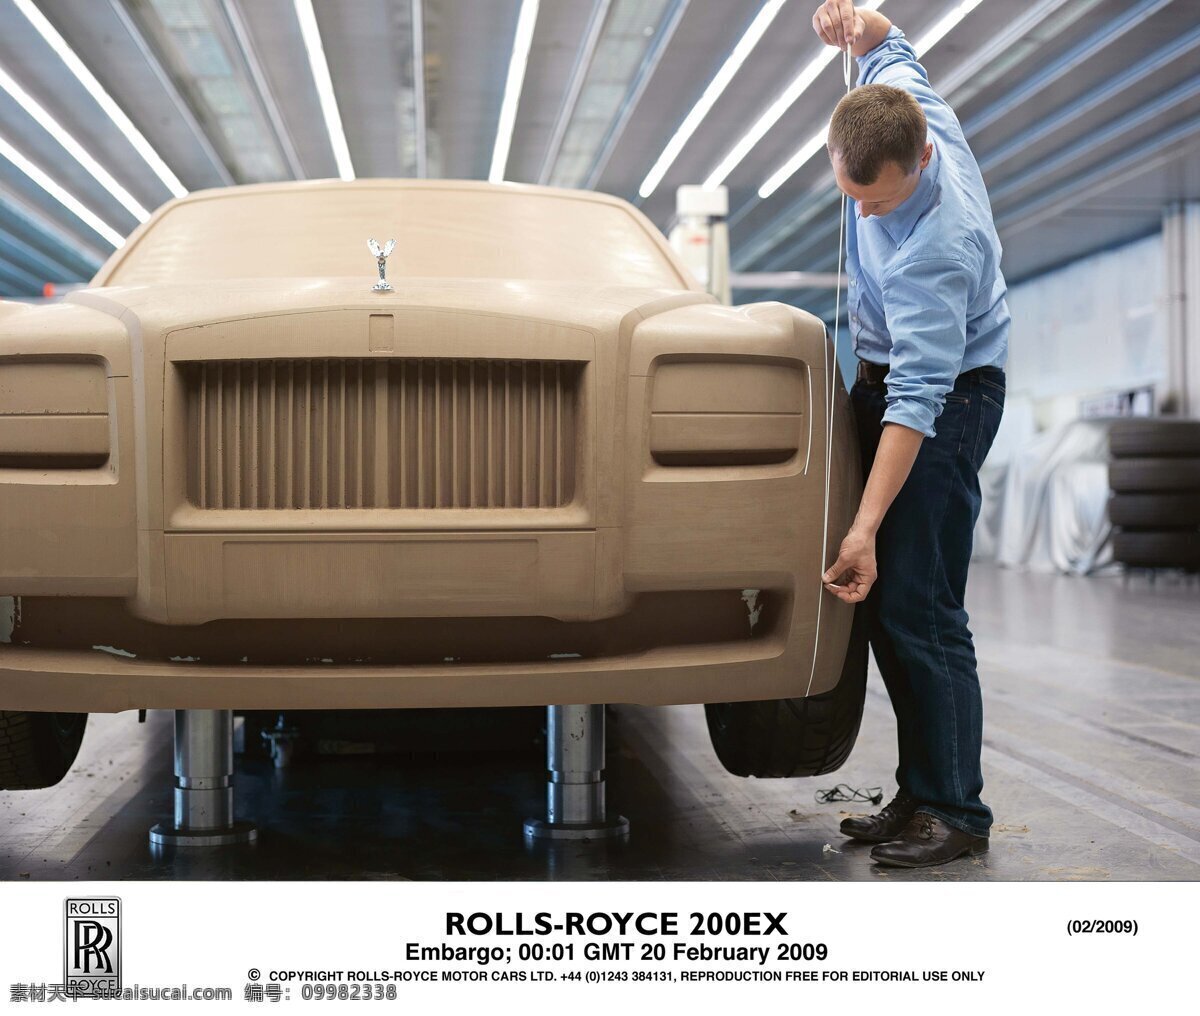 劳斯莱斯 生产线 rolls royce 宝马 公司 旗下 品牌 车间生产线 加工 模型模具 工业生产 现代科技